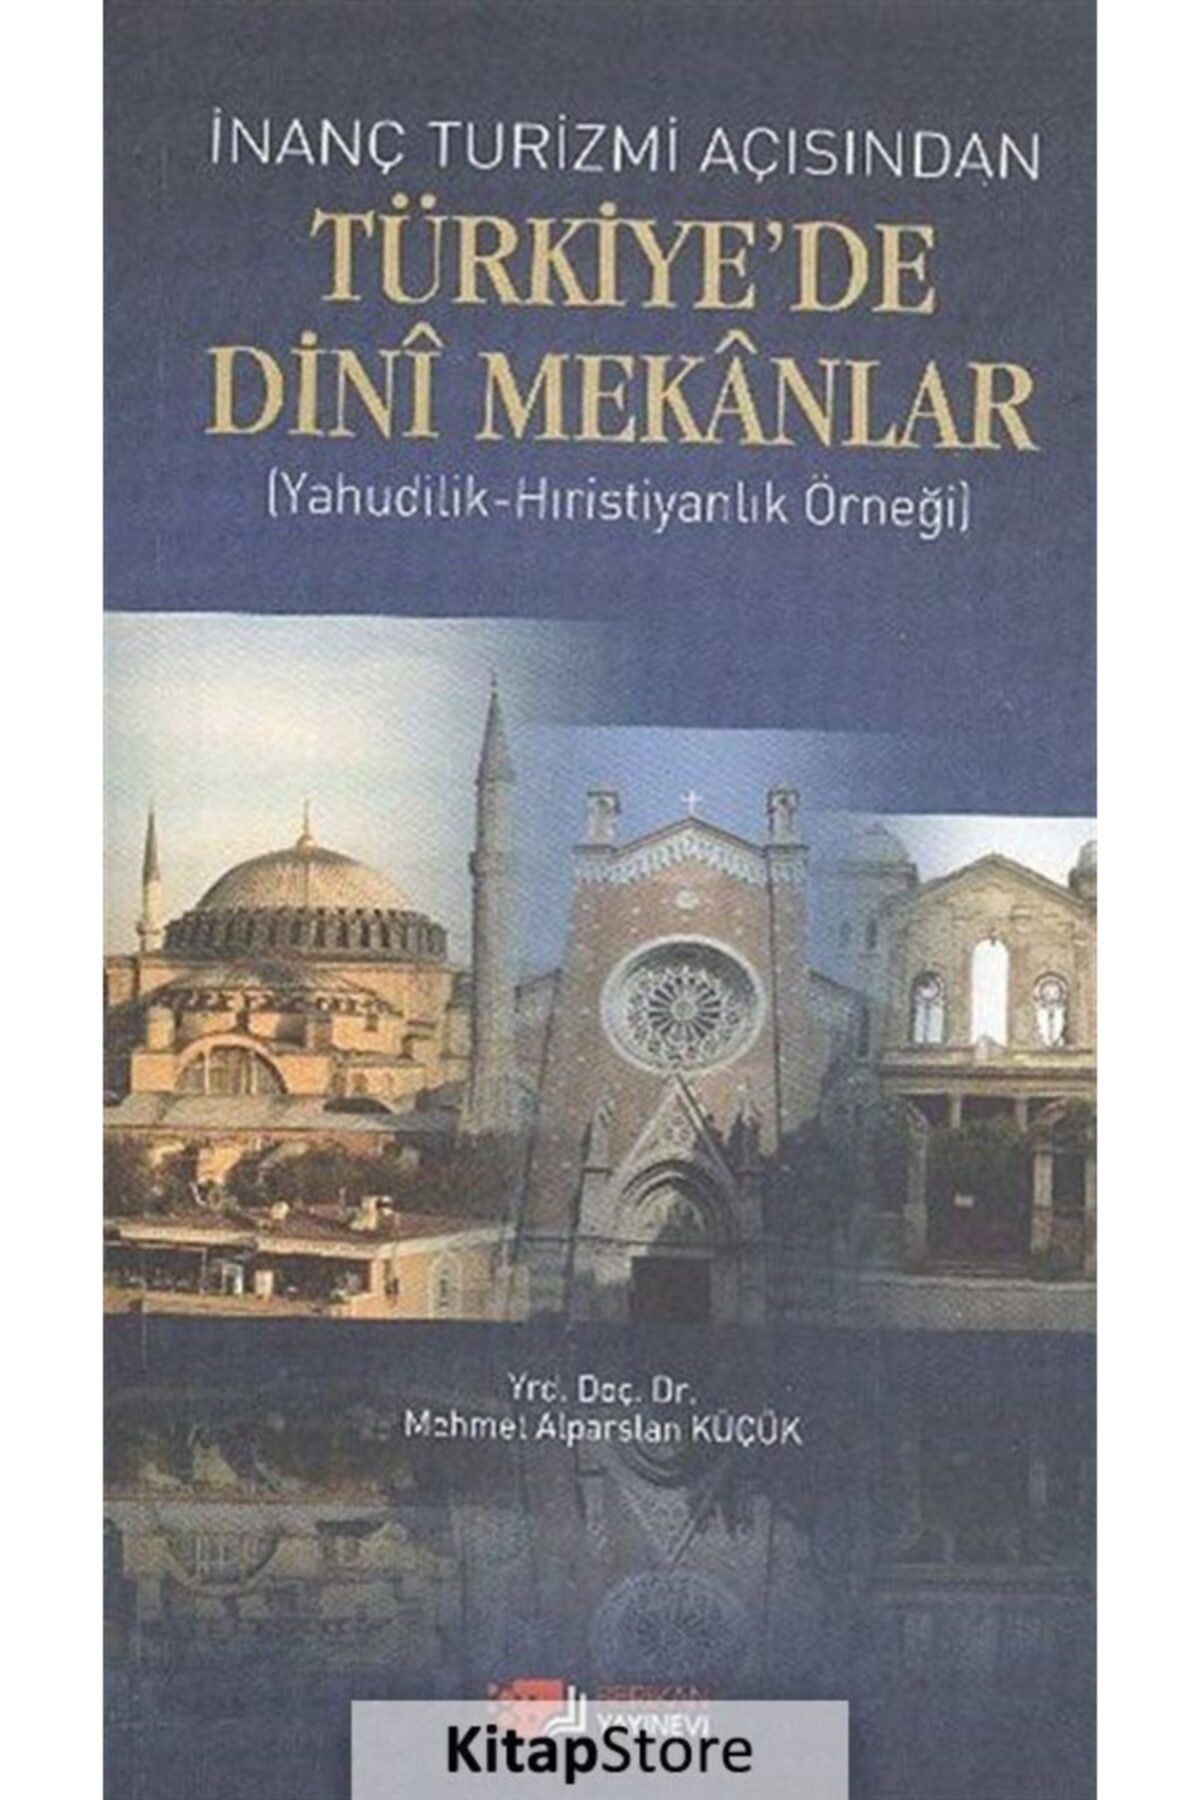 Berikan Yayınevi Inanç Turizmi Açısından Türkiye'de Dini Mekanlar & (Yahudilik-hıristiyanlık Örneği)